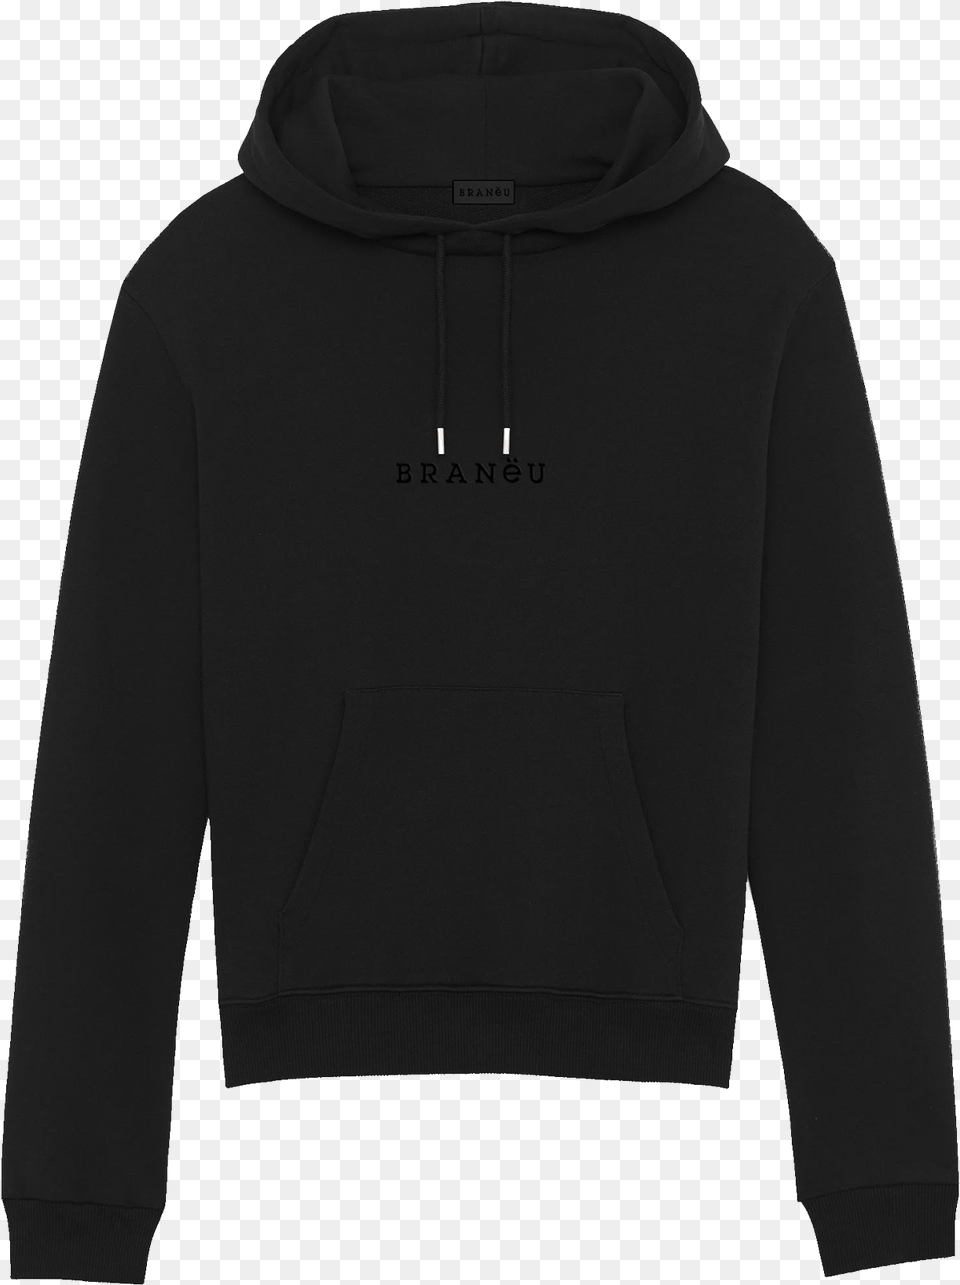 Black On Black Hoodie, Clothing, Knitwear, Sweater, Sweatshirt Png Image